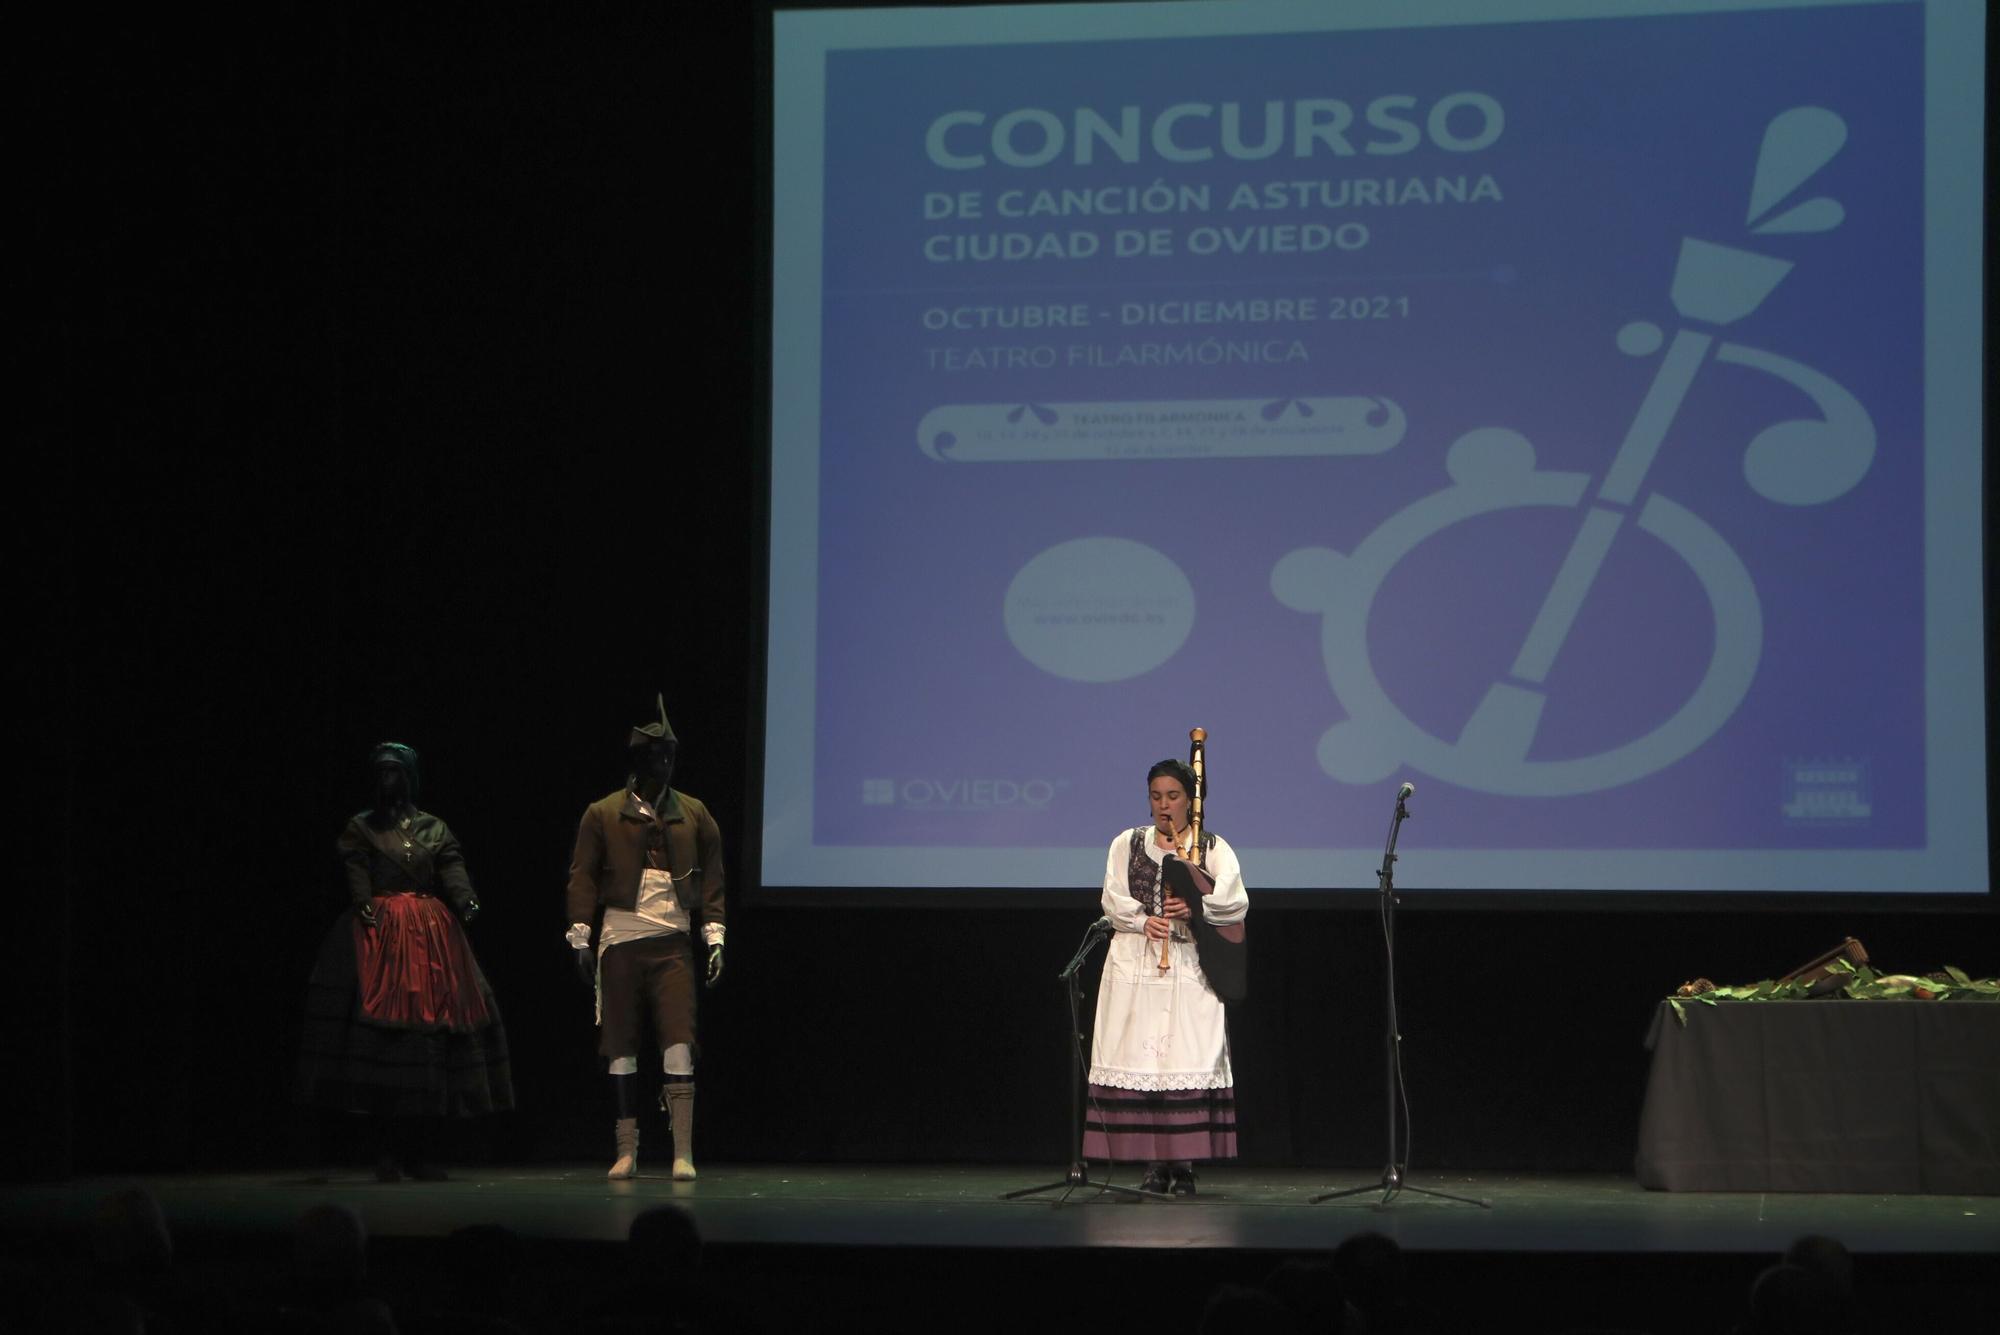 Cuarta eliminatoria del concurso de canción asturiana “Ciudad de Oviedo”